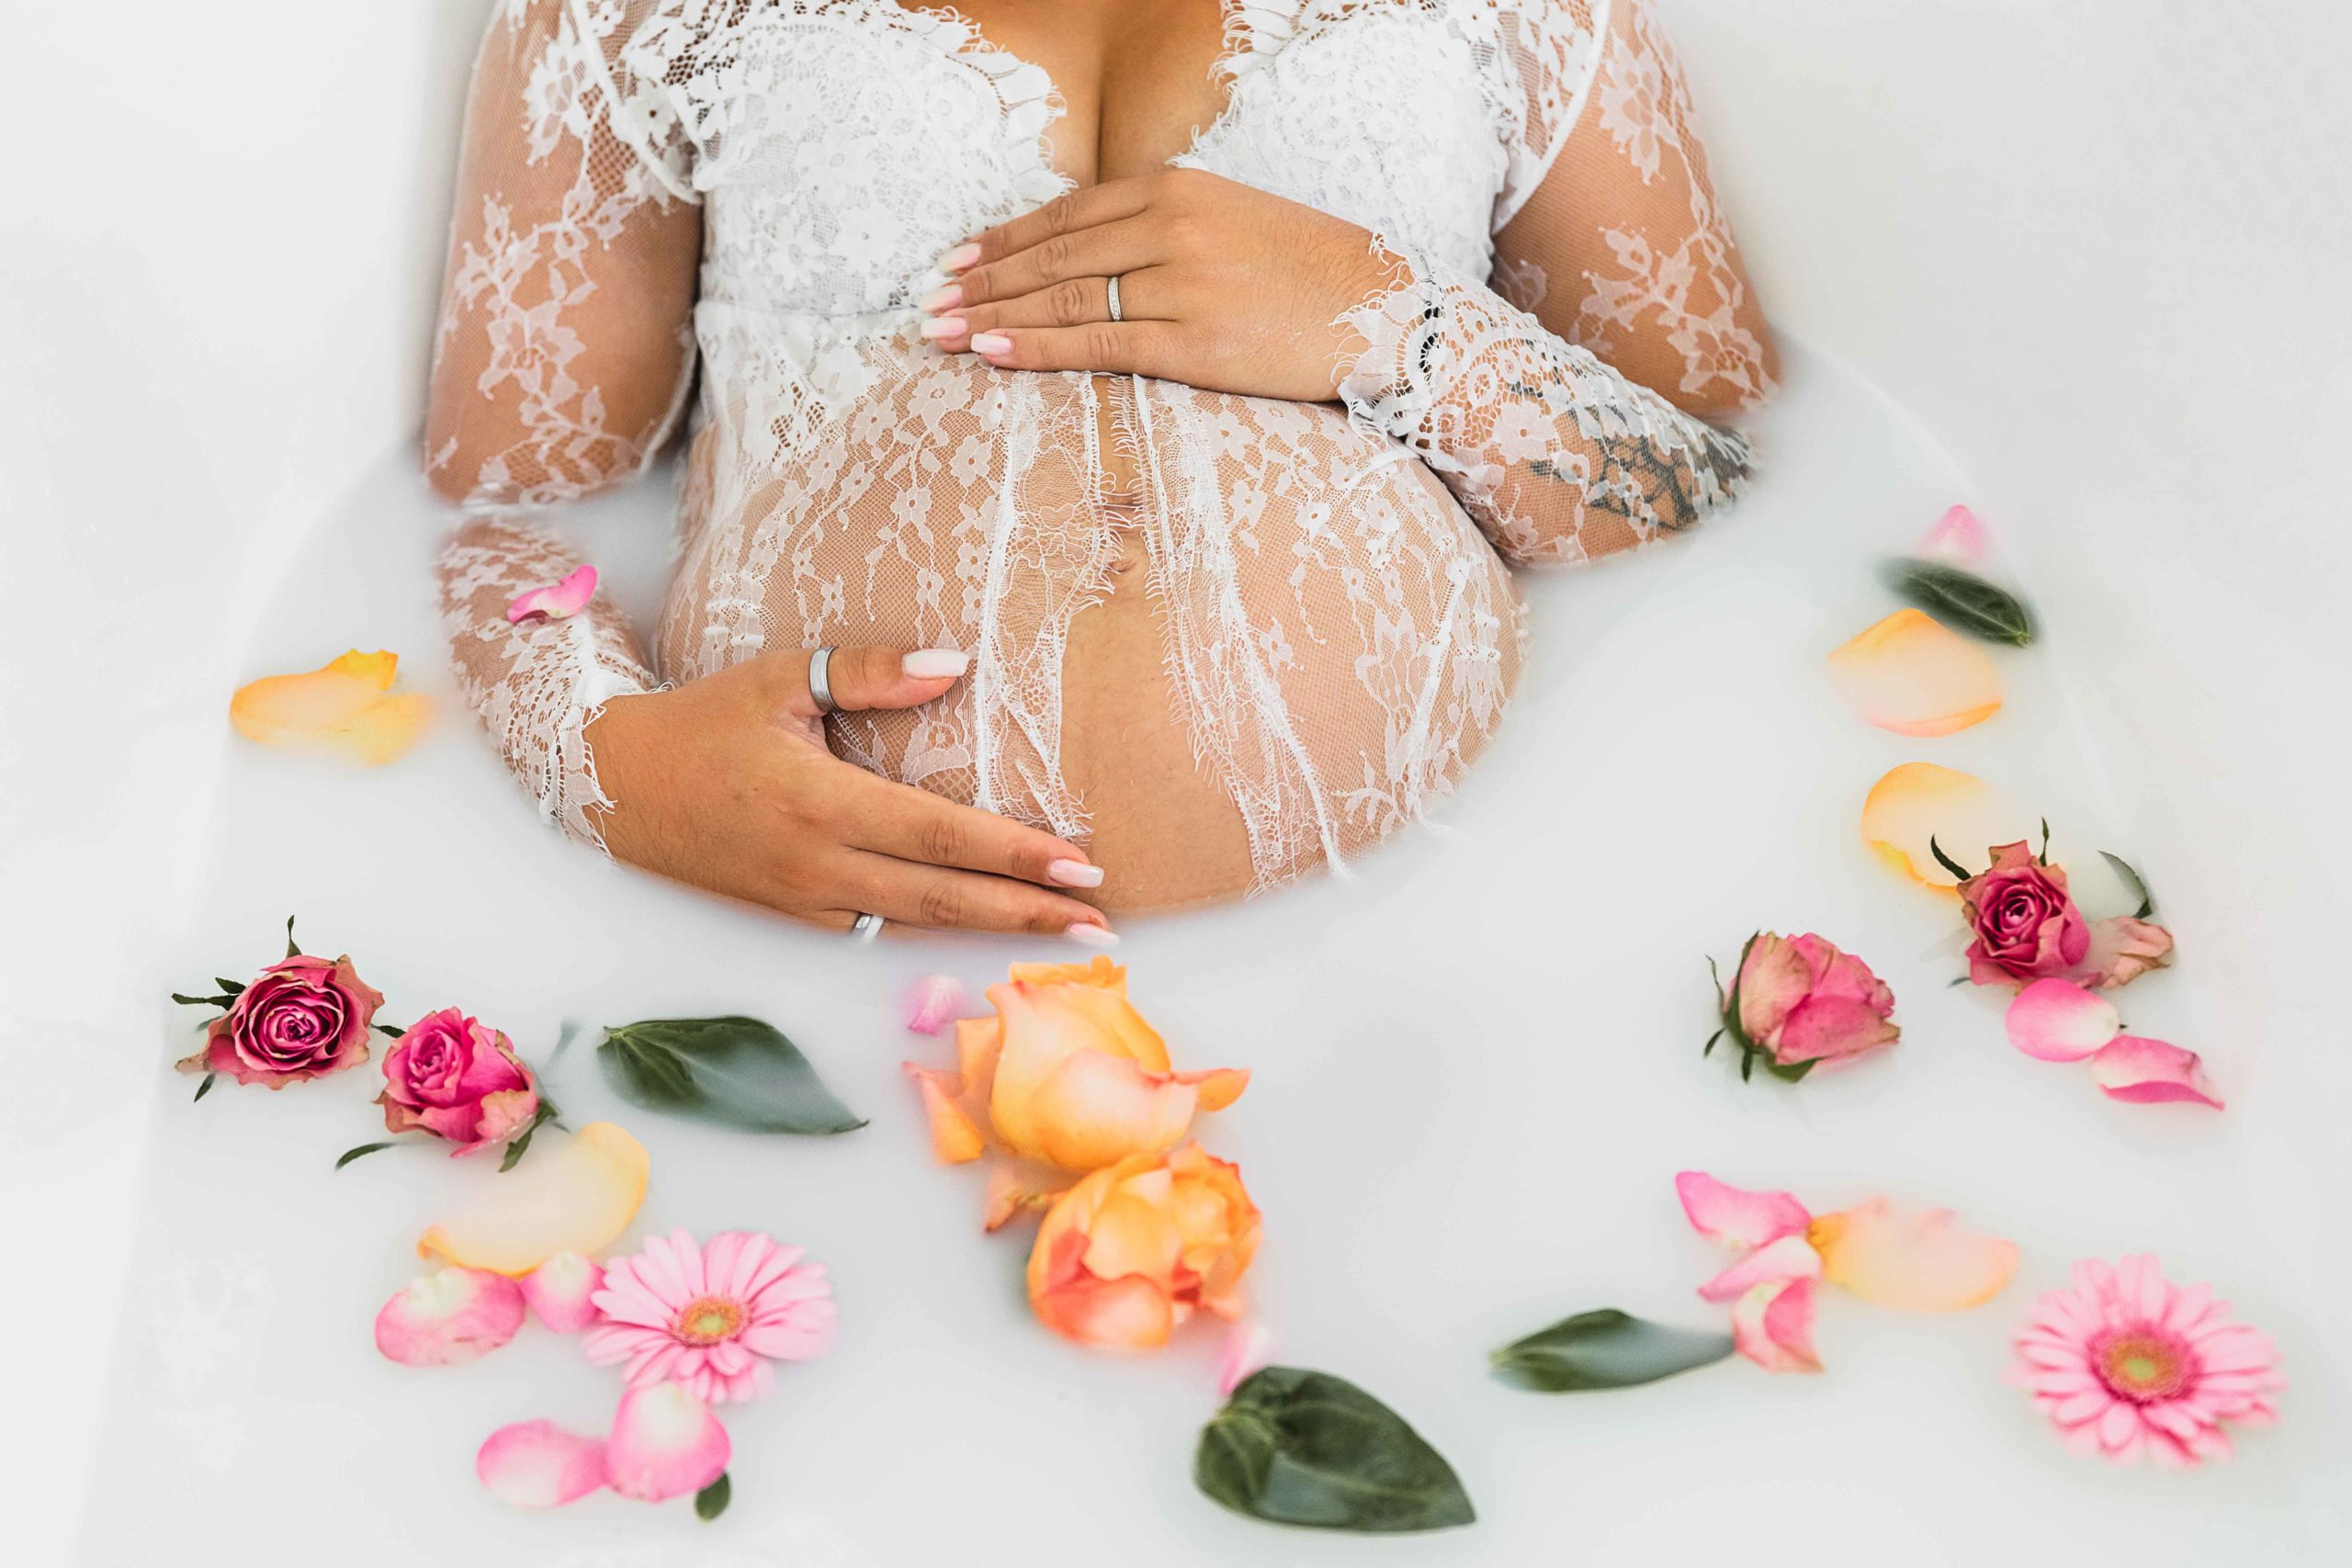 femme enceinte dans une robe en dentelle blanche, dans un bain de lait avec des fleurs . Gros plan sur le ventre de la maman